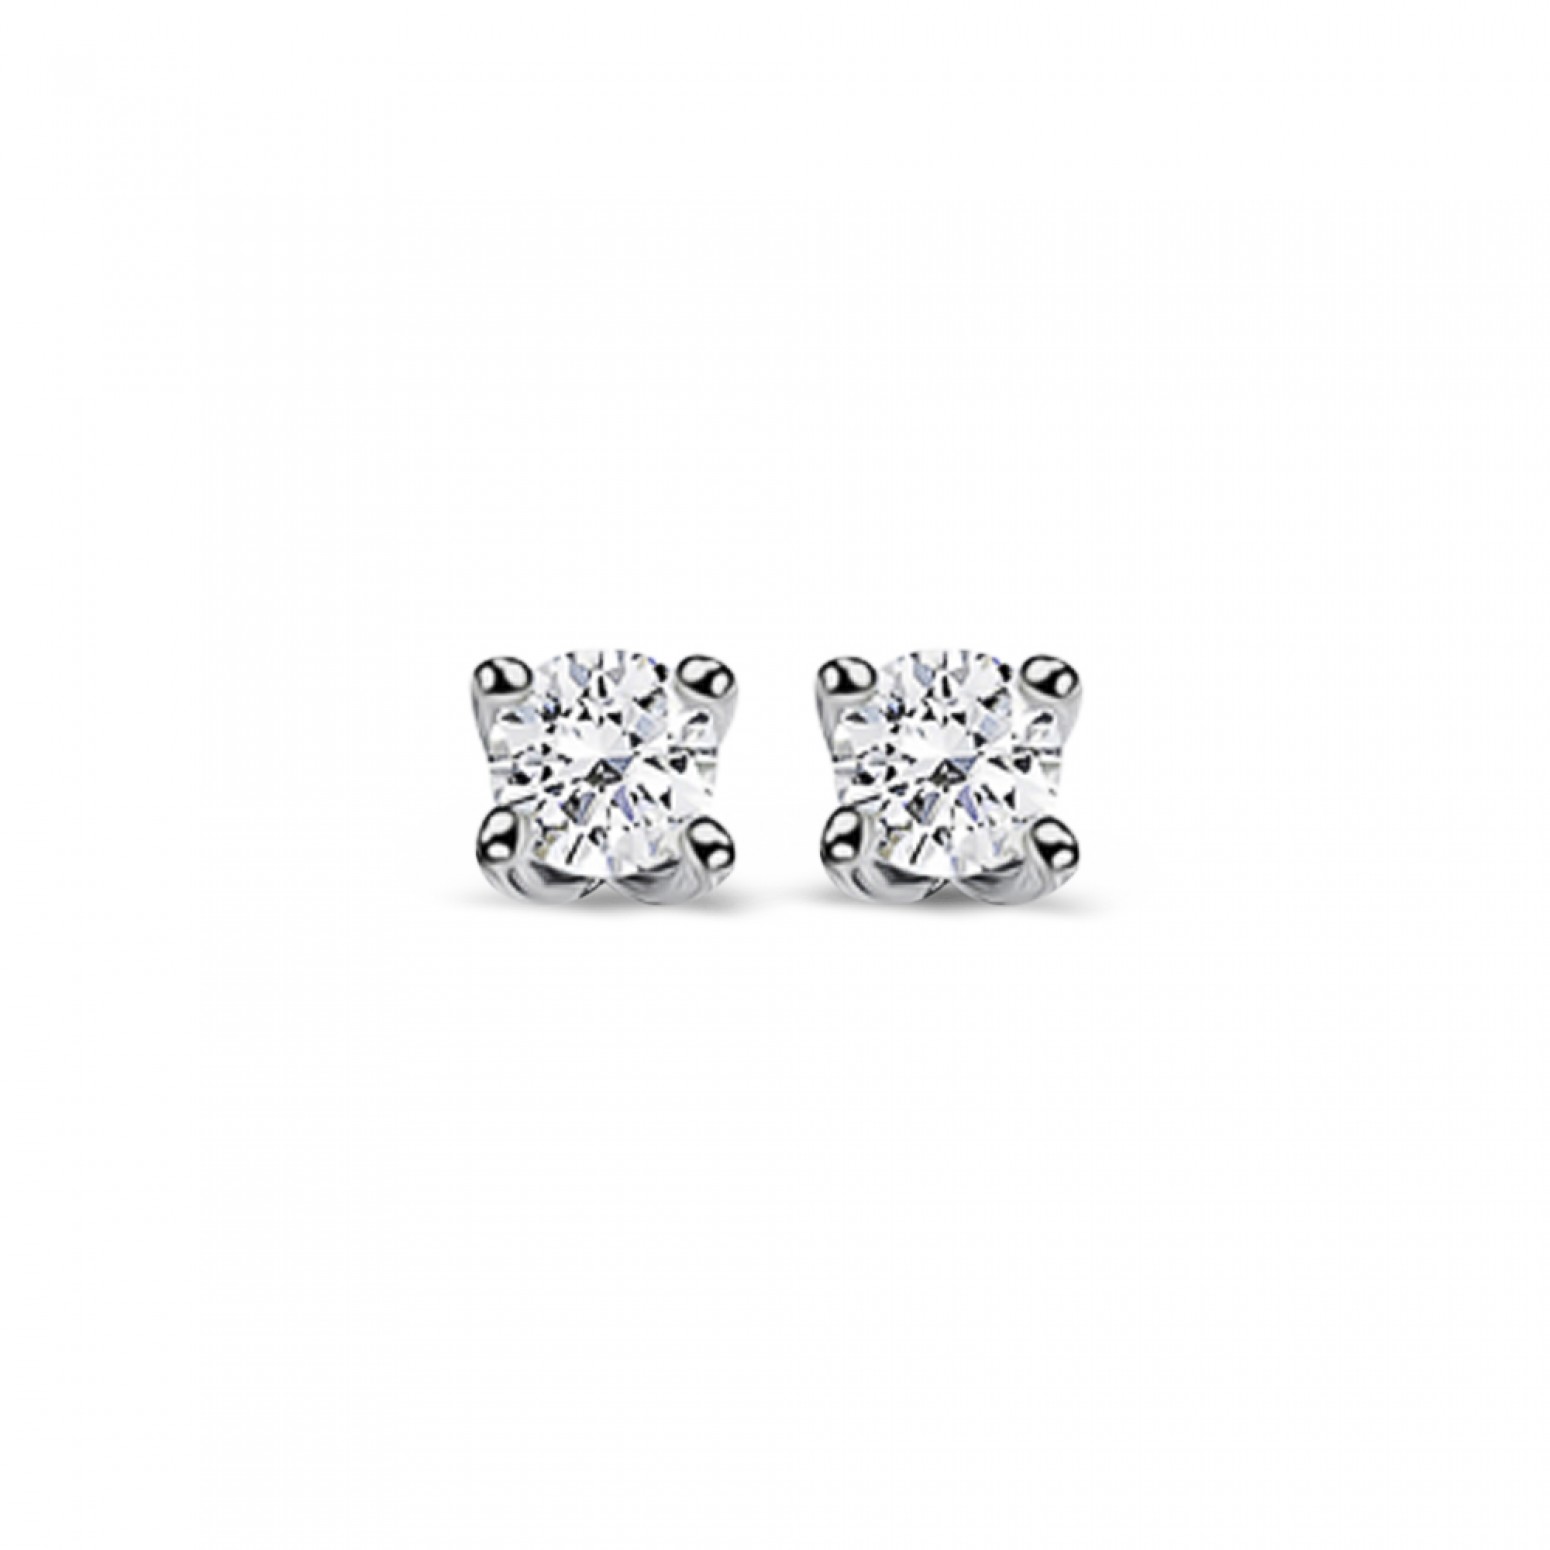 Μονόπετρα σκουλαρίκια Κ18 λευκόχρυσο με διαμάντια 0.15ct , VS1, F απο το IGL sk2680 ΣΚΟΥΛΑΡΙΚΙΑ Κοσμηματα - chrilia.gr